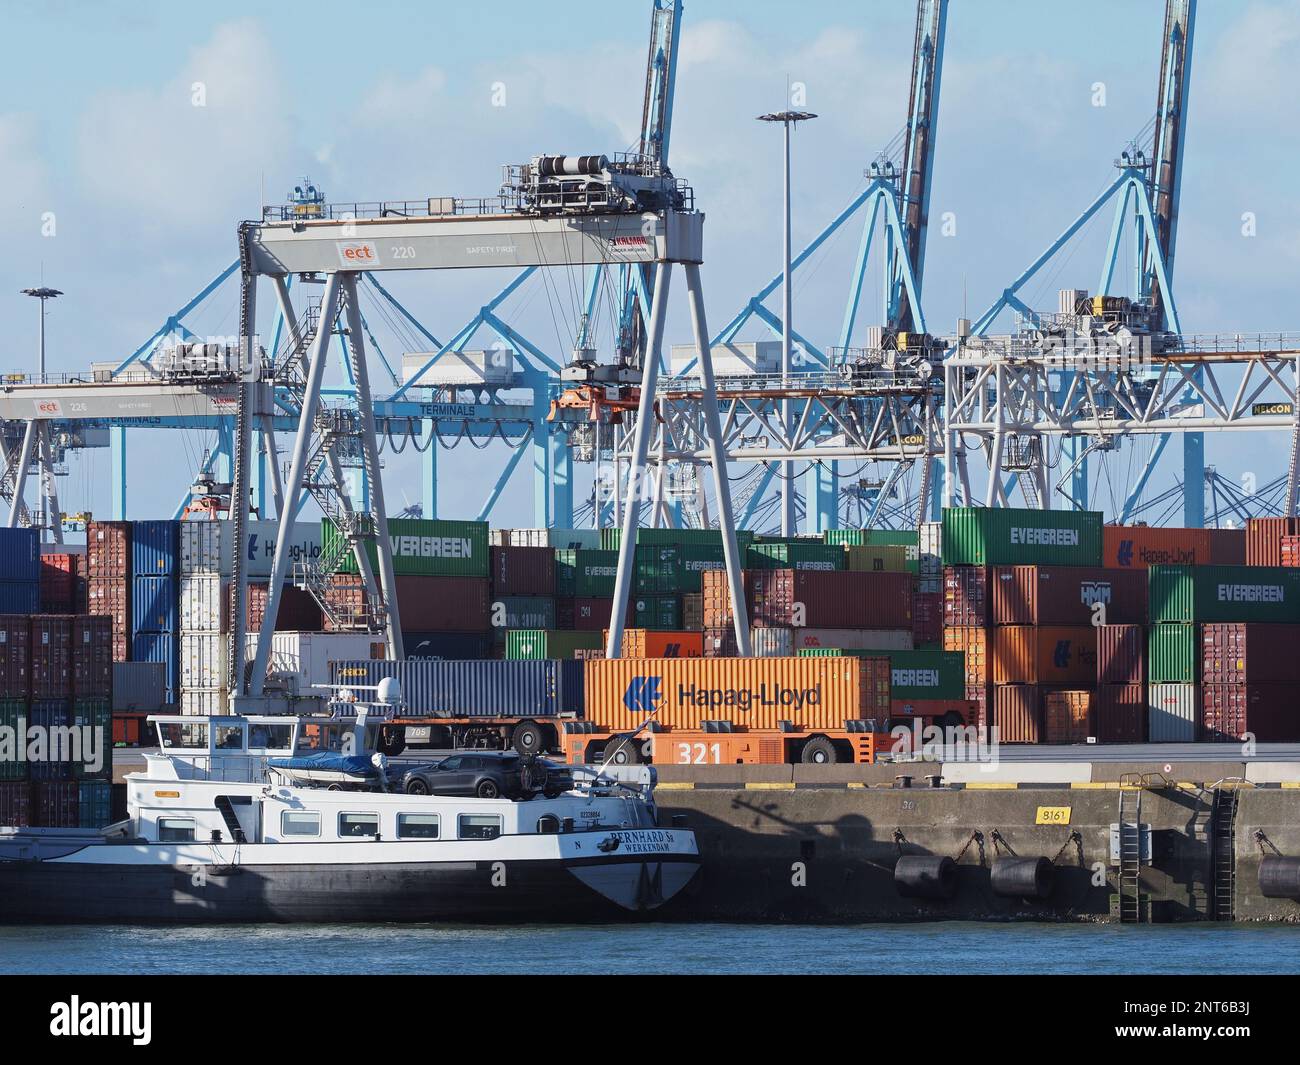 Il moderno terminal per container ECT nel porto di Rotterdam, nei Paesi Bassi, utilizza gru senza equipaggio e veicoli senza conducente. Foto Stock